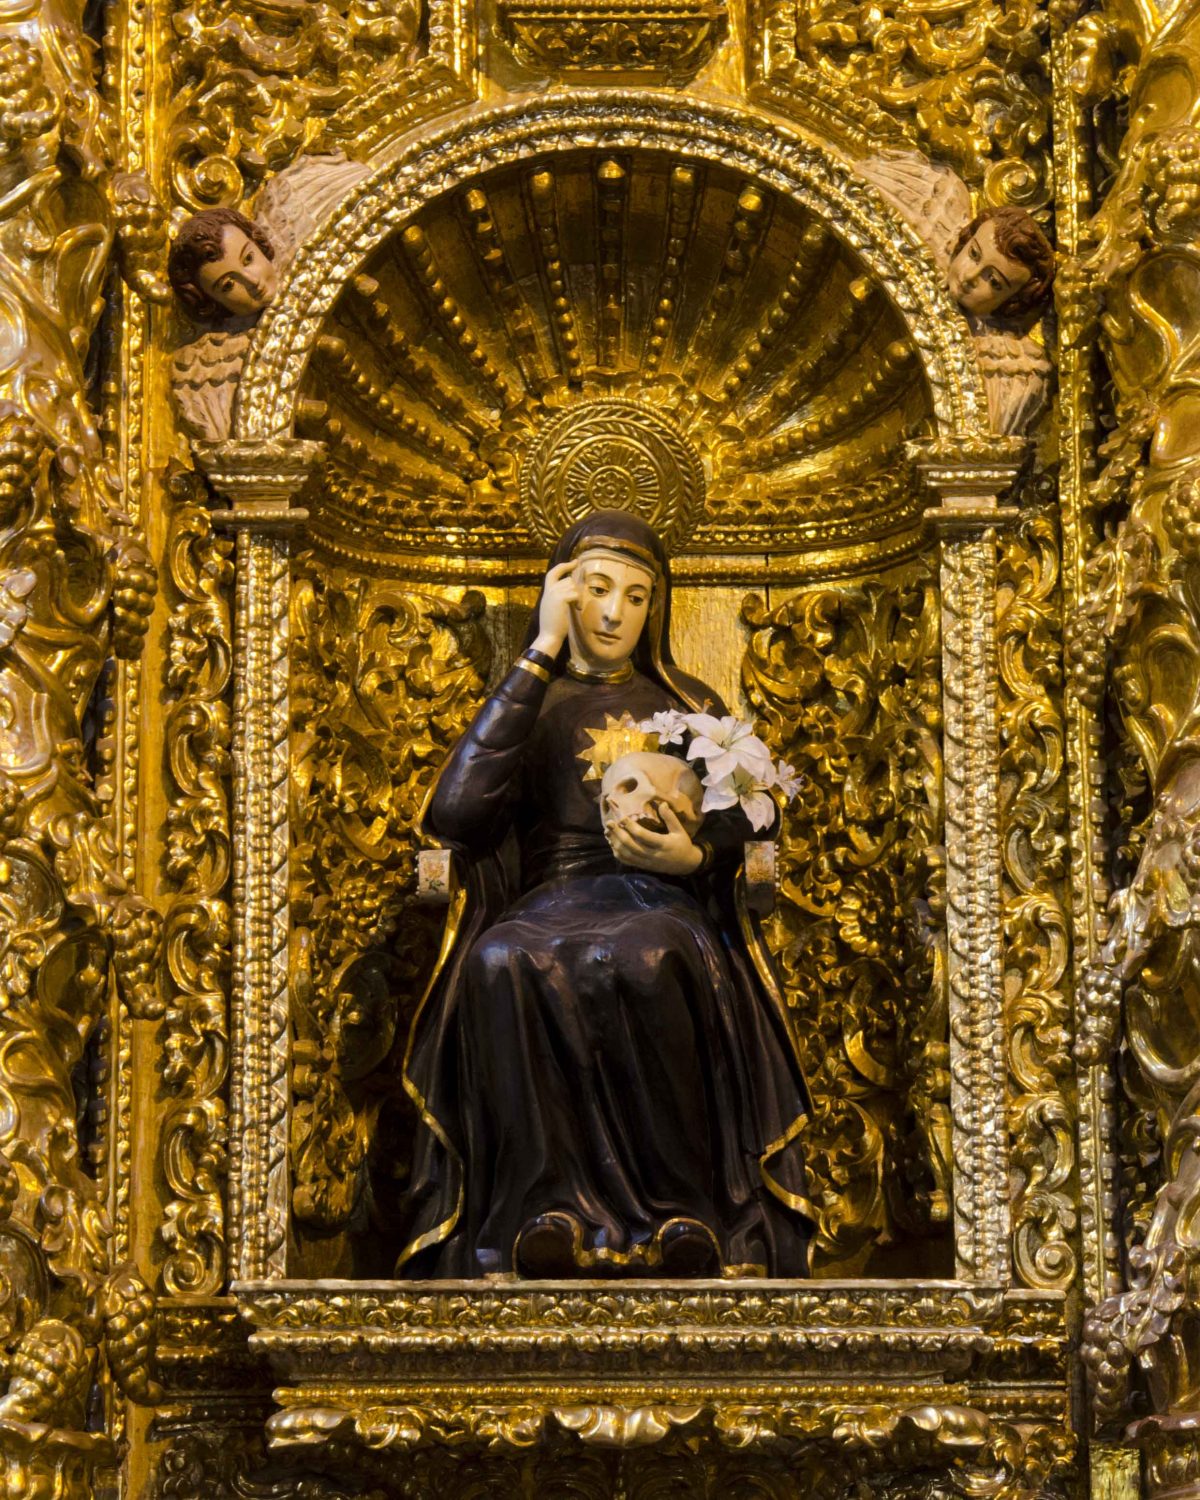 Mariana de Jesús, la patrona de Quito; La Compañía de Jesús, vestida con túnicas negras, sentada sosteniendo una calavera y lirios, rodeada de detalles dorados | ©Ángela Drake